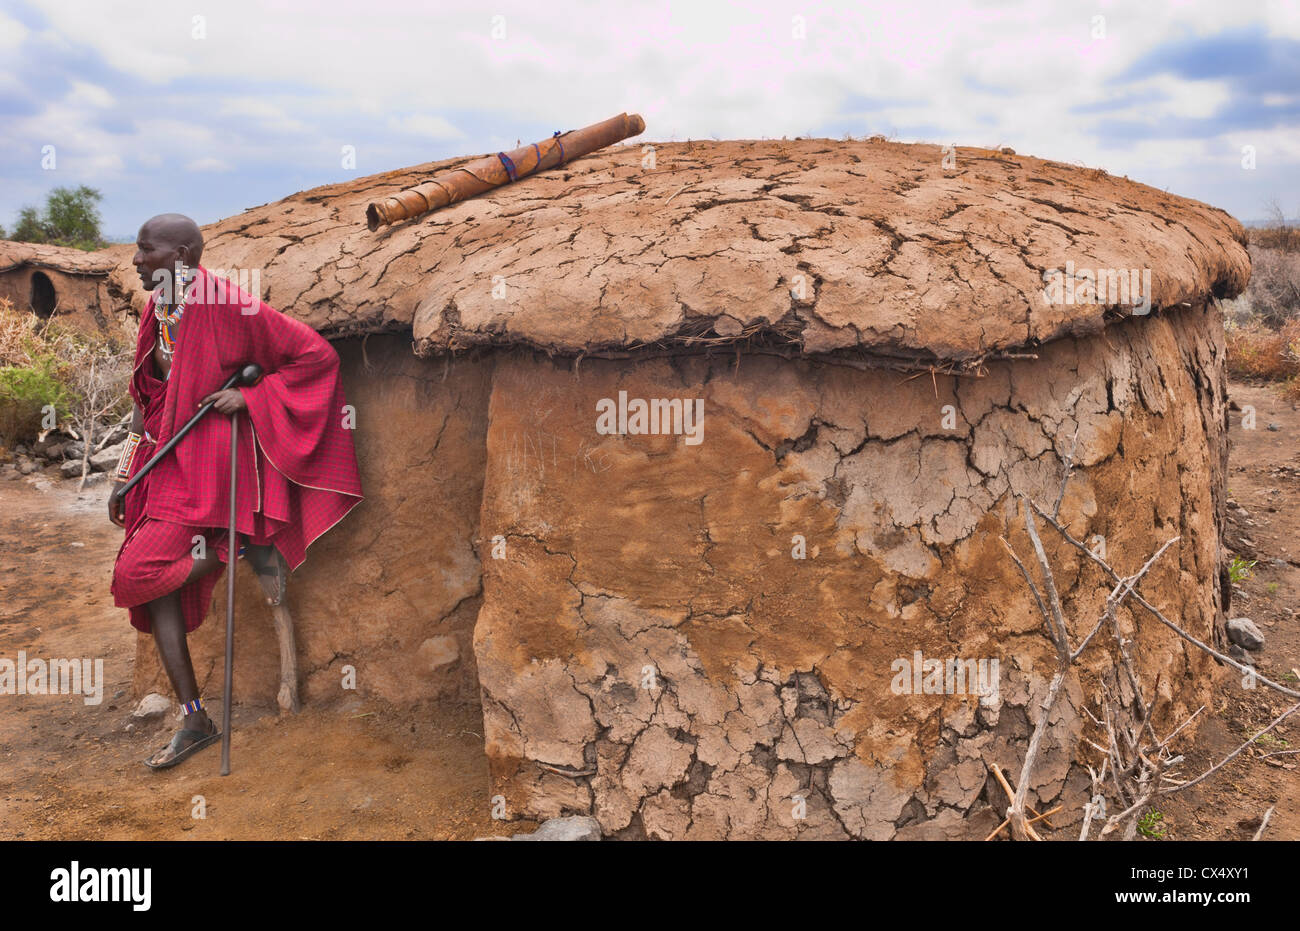 Kenya Africa Amboseli Masai Masai tribe hombre vestido de traje rojo y cordones en frente de la casa de barro en zona remota #1 Foto de stock